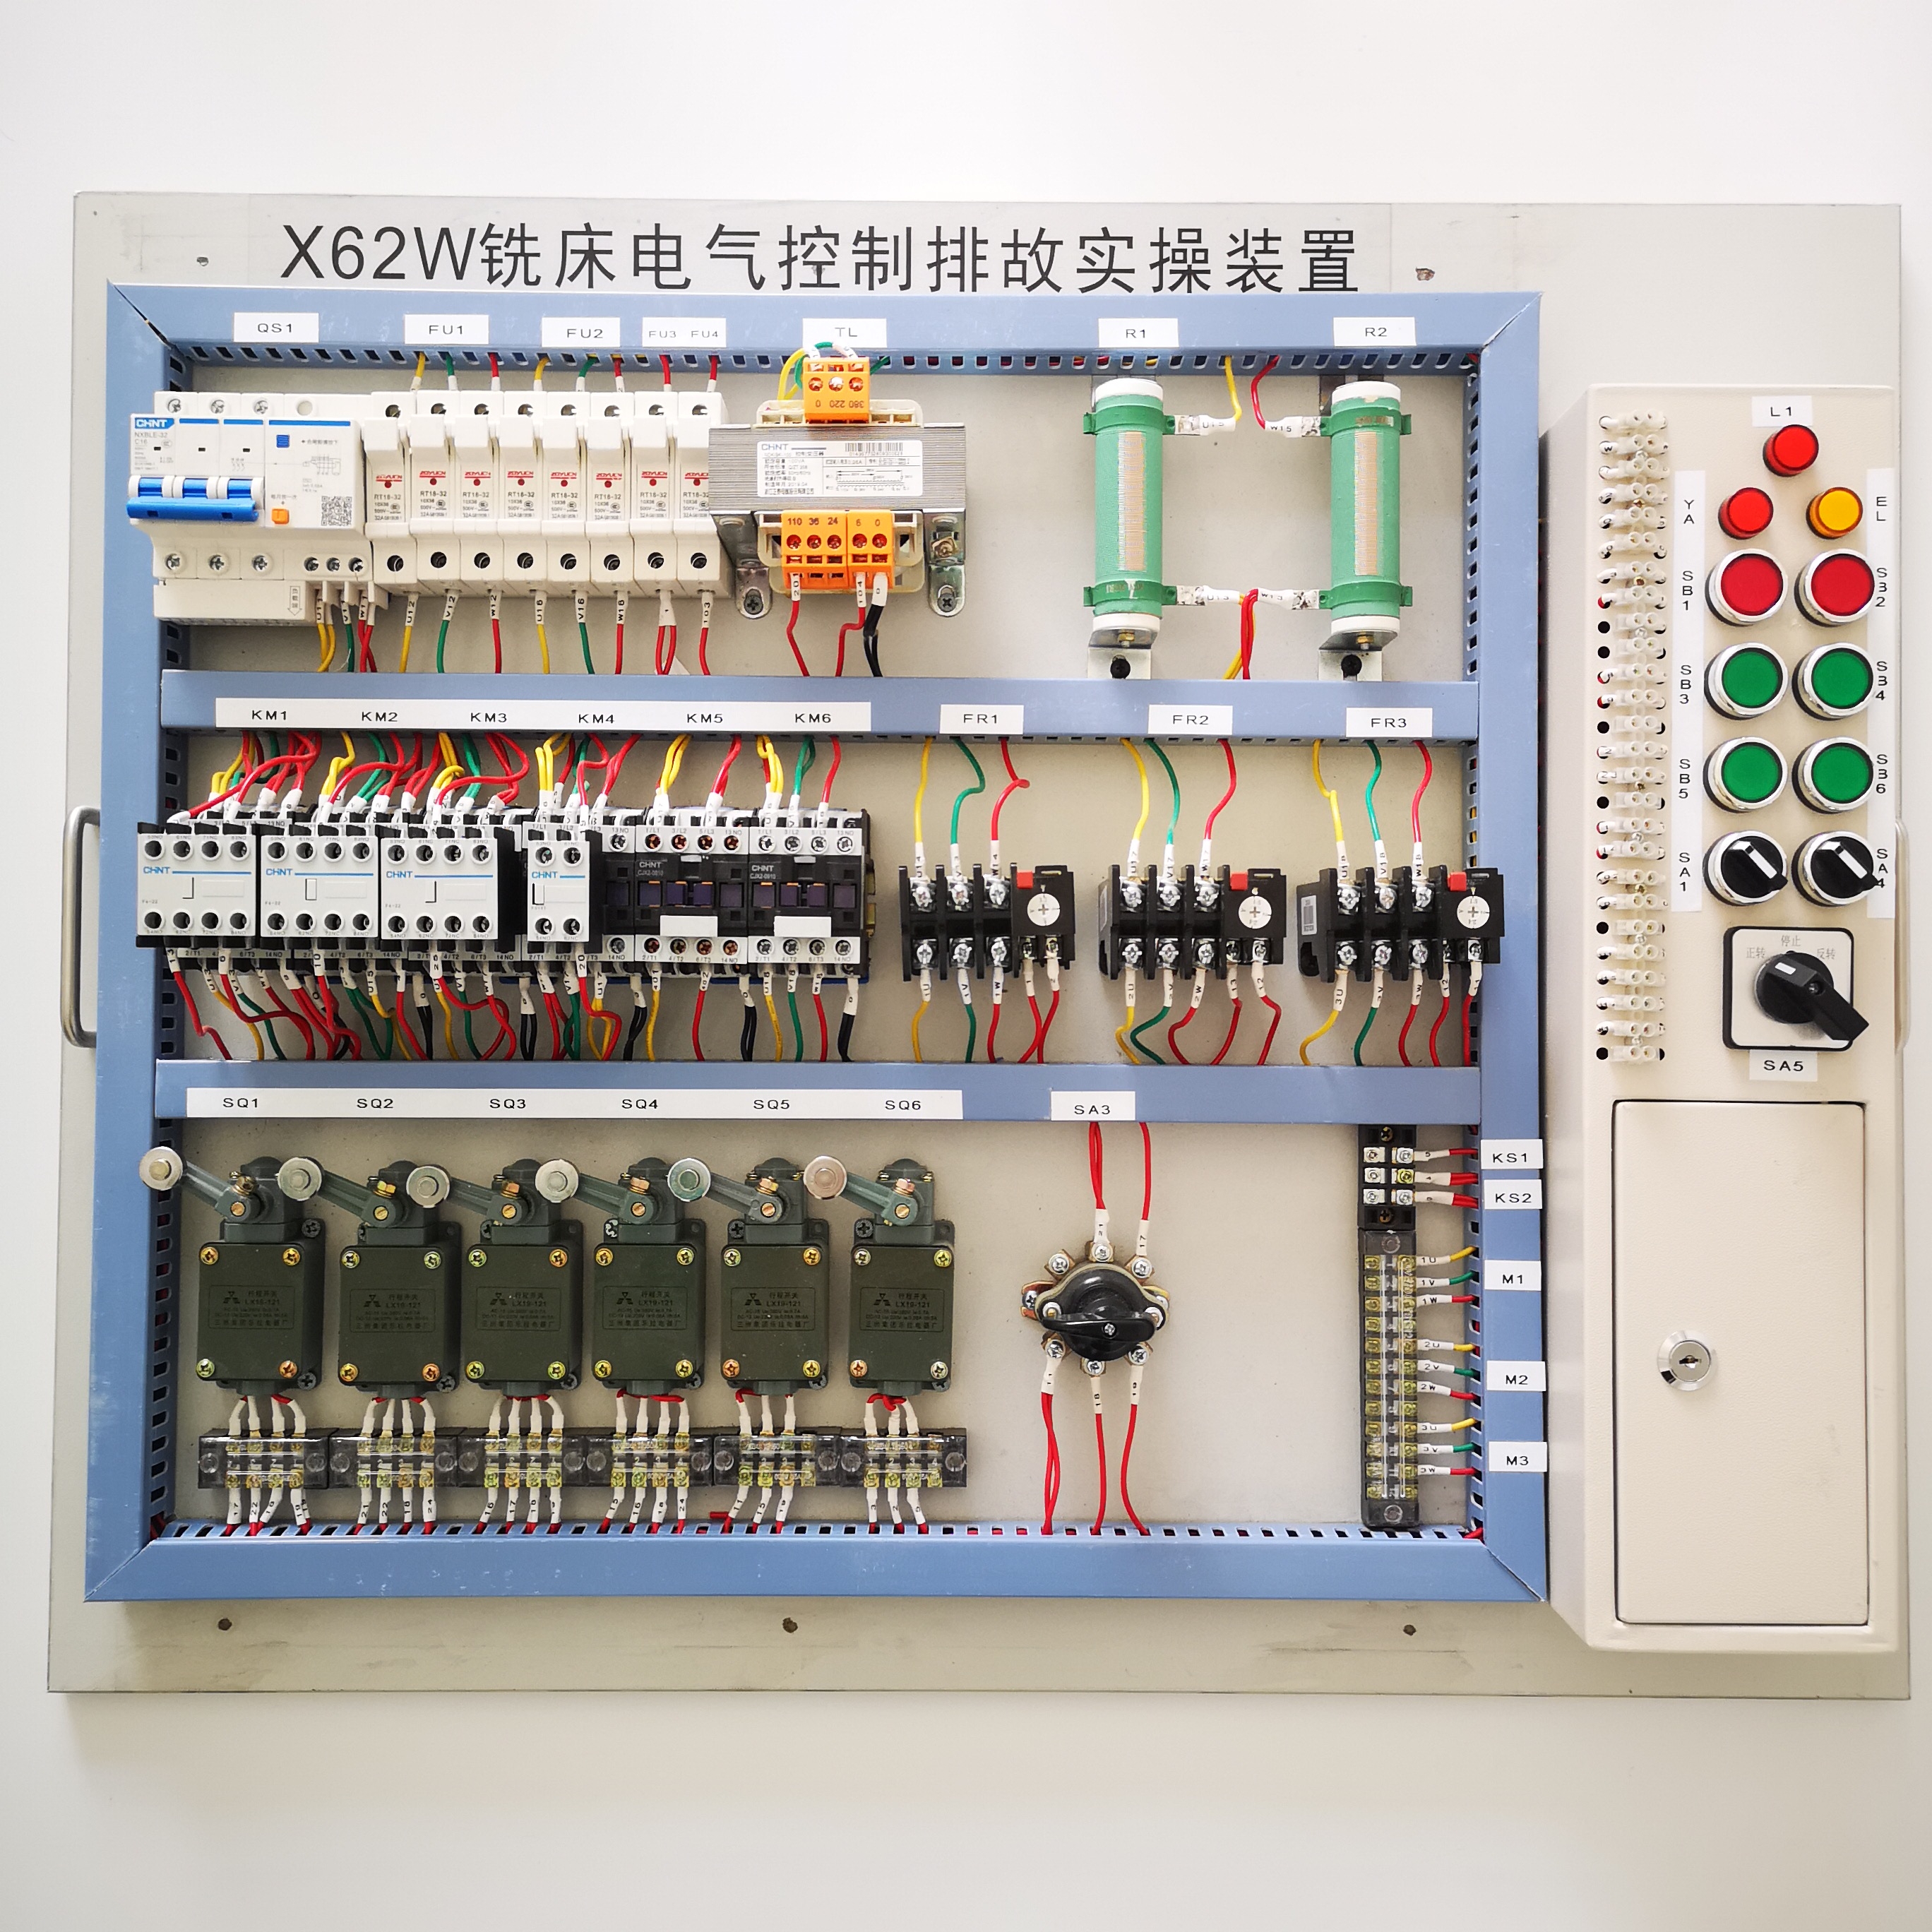 跃祥机床电气模块 电工考核-X62W铣床电气控制排故实训装置